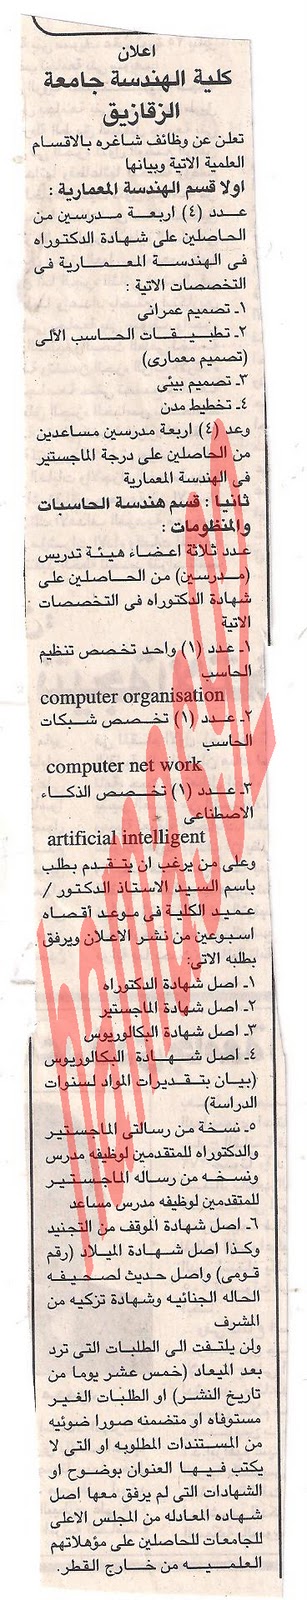 وظائف اكاديميه وظائف مصر الاربعاء 12\10\2011 Picture+001